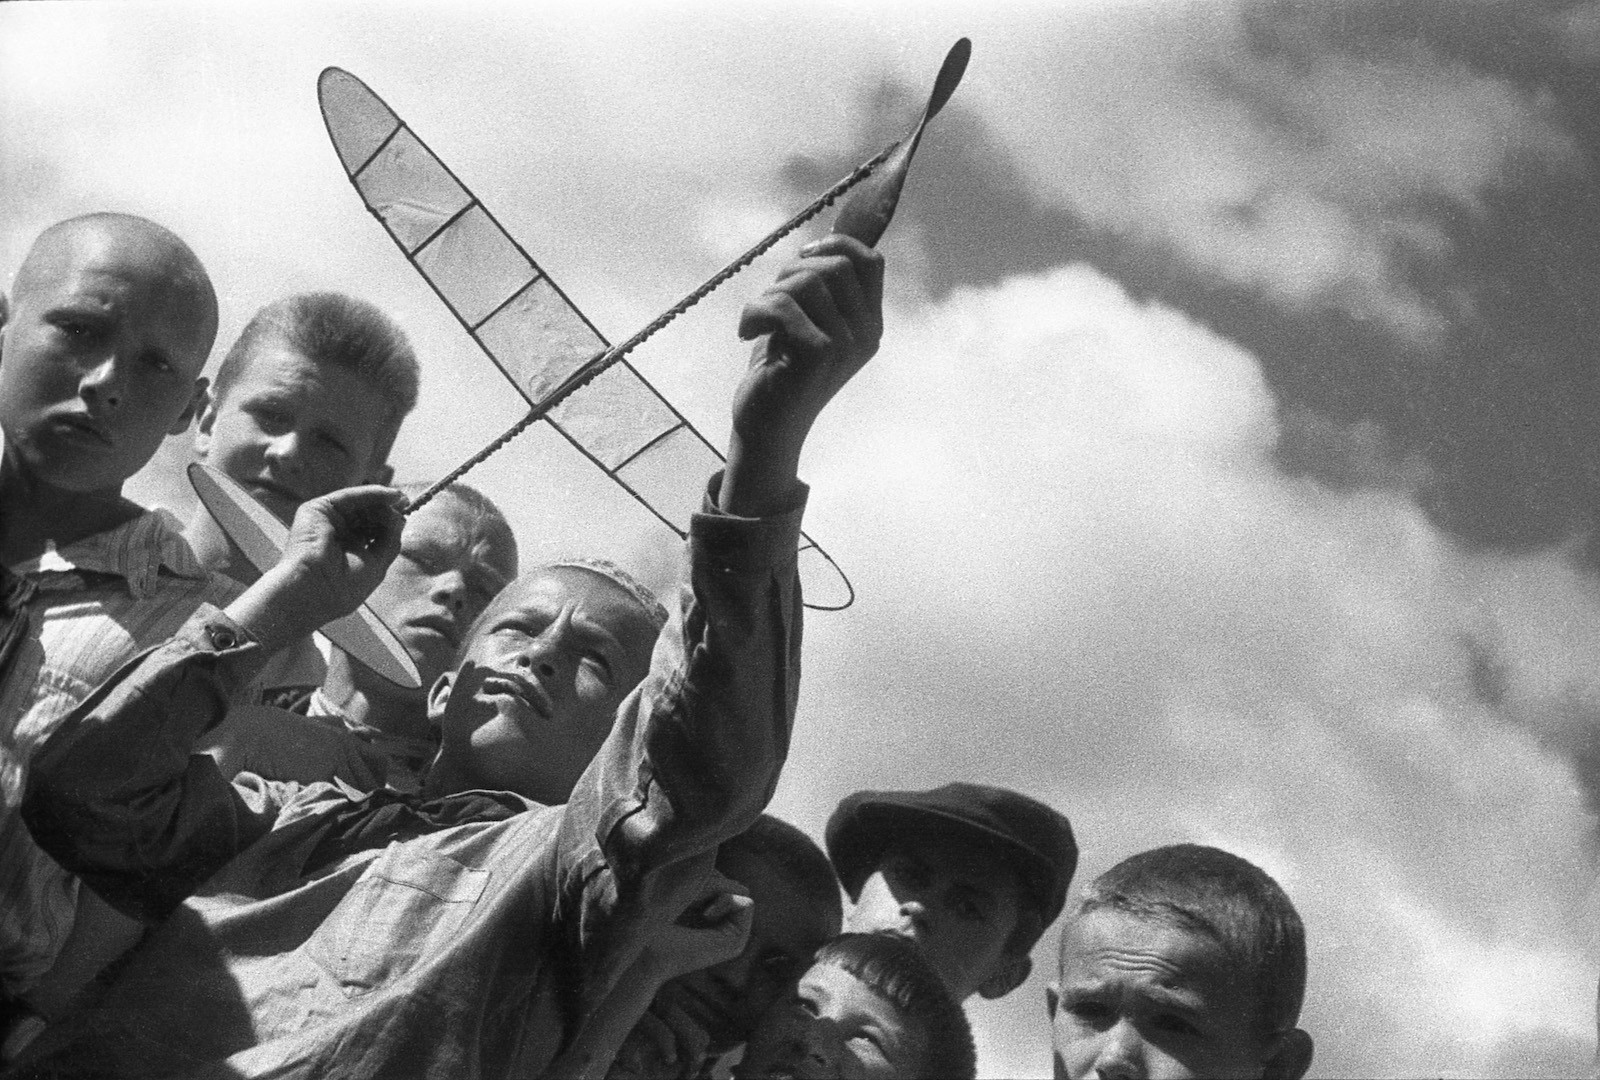 Авиамодельный кружок, 1930-е. Фотограф Эммануил Евзерихин